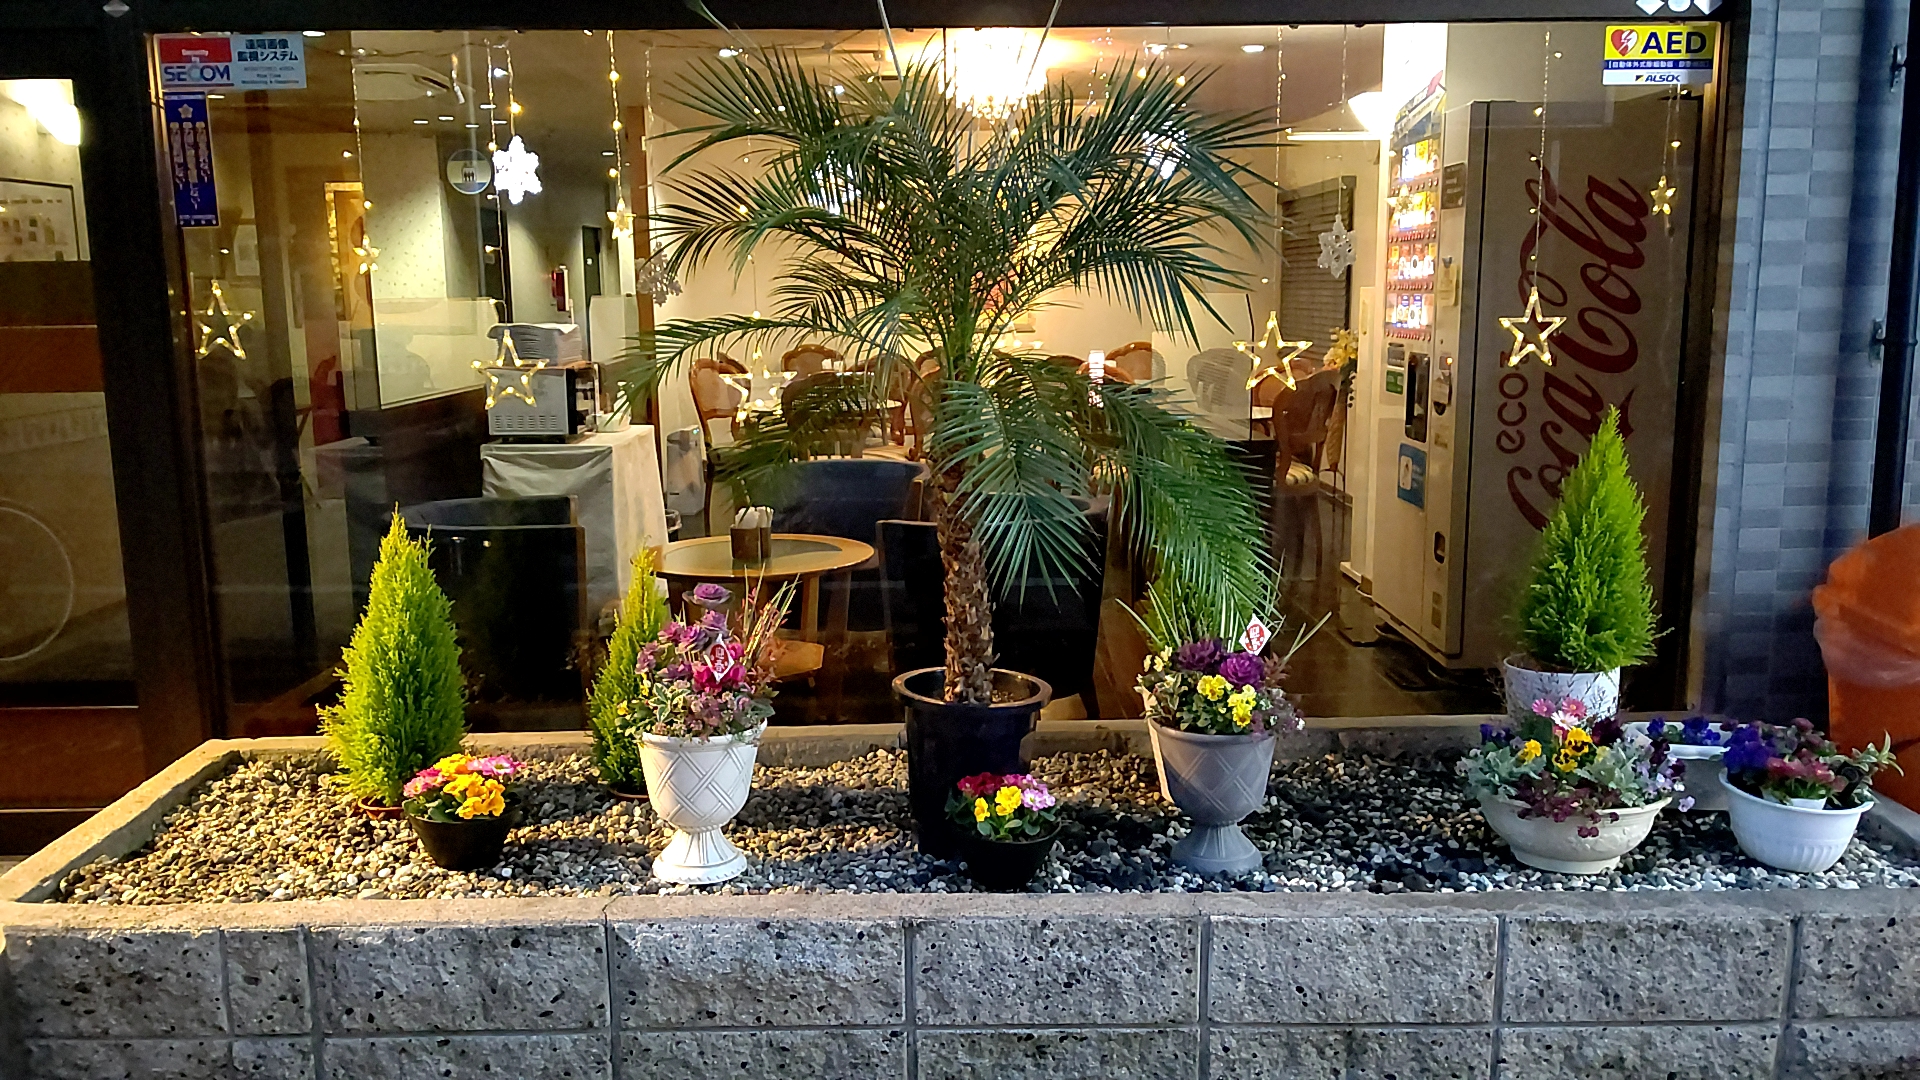 【入口花壇】季節毎に変わる玄関先でお客様をお迎えします。